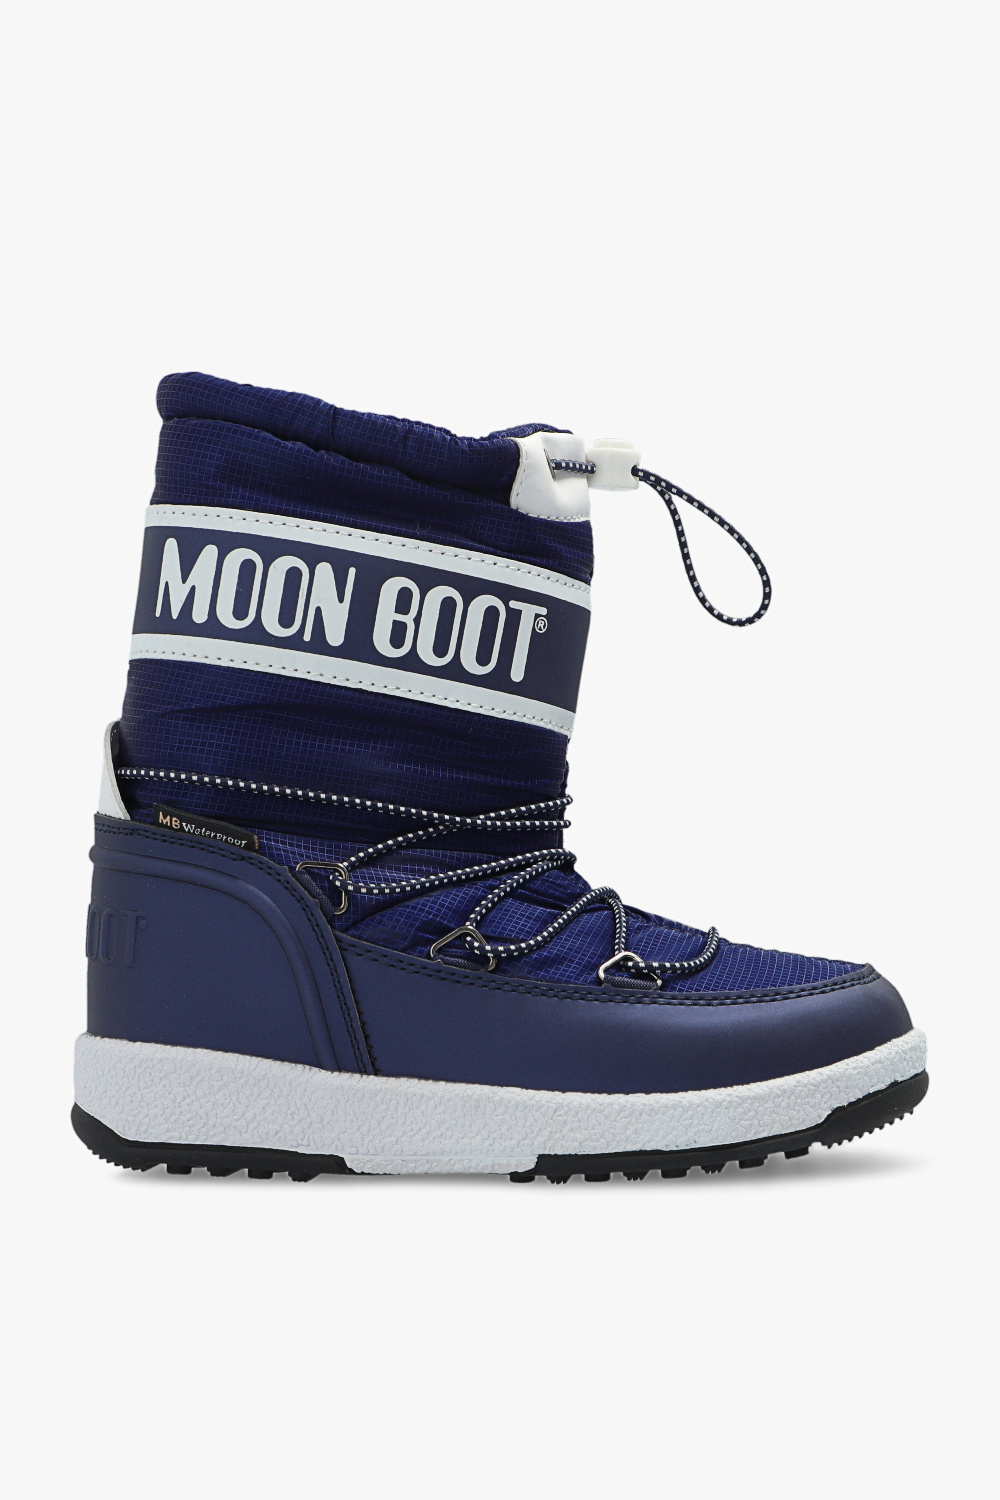 Moon Boot Enfant Sport WP Navy White